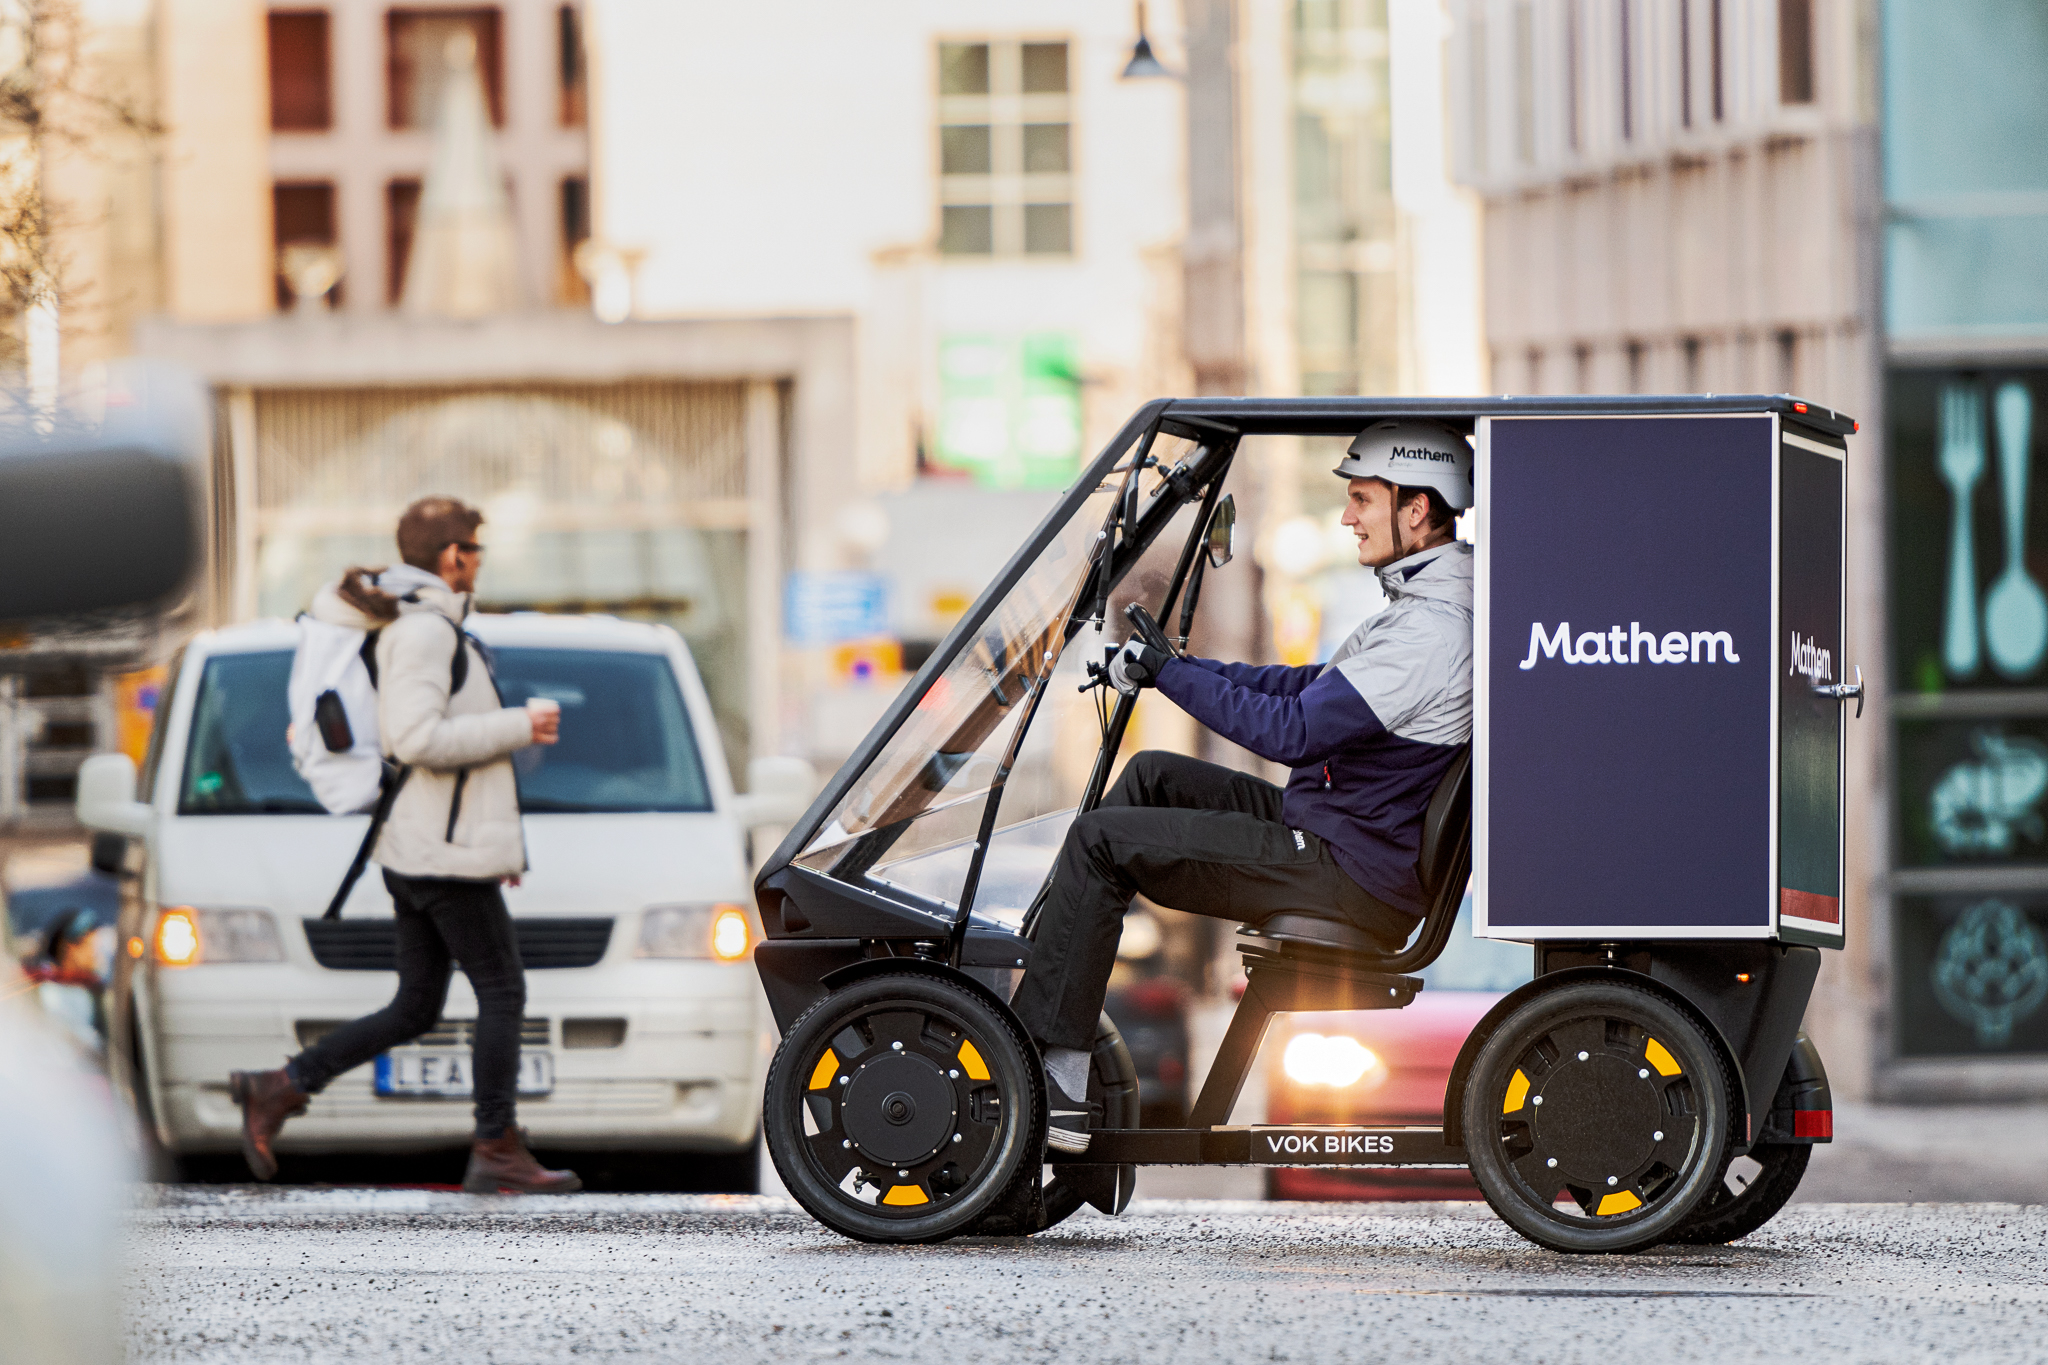 Vok cargo bike in Stockholm delivering Mathem groceries